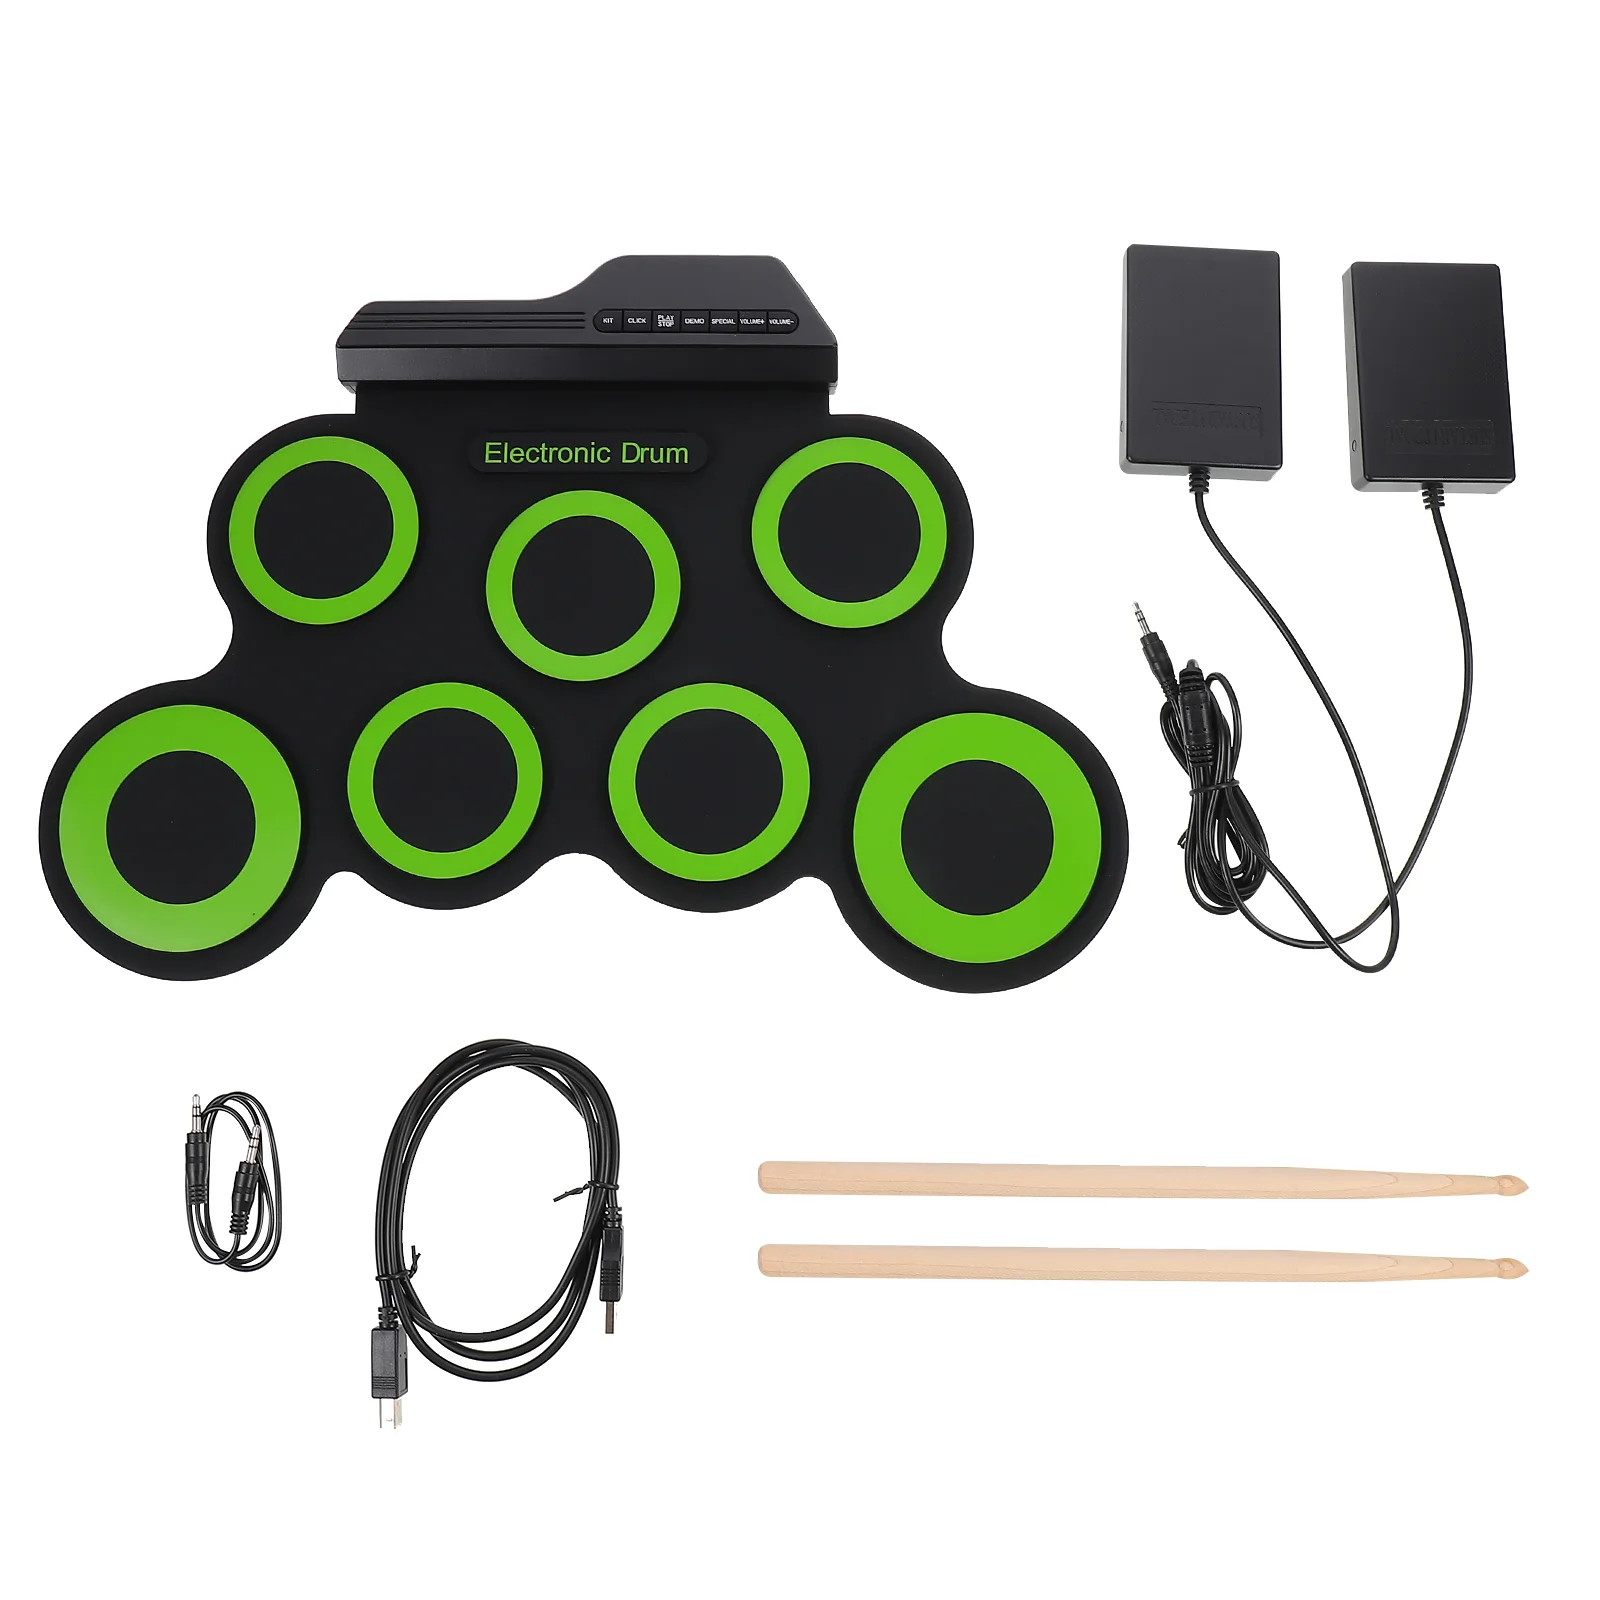 

Портативный барабанный набор USB, электрические игрушки Adukt, Тренировочный Коврик из АБС-пластика и электронных компонентов, складной, для детей и взрослых